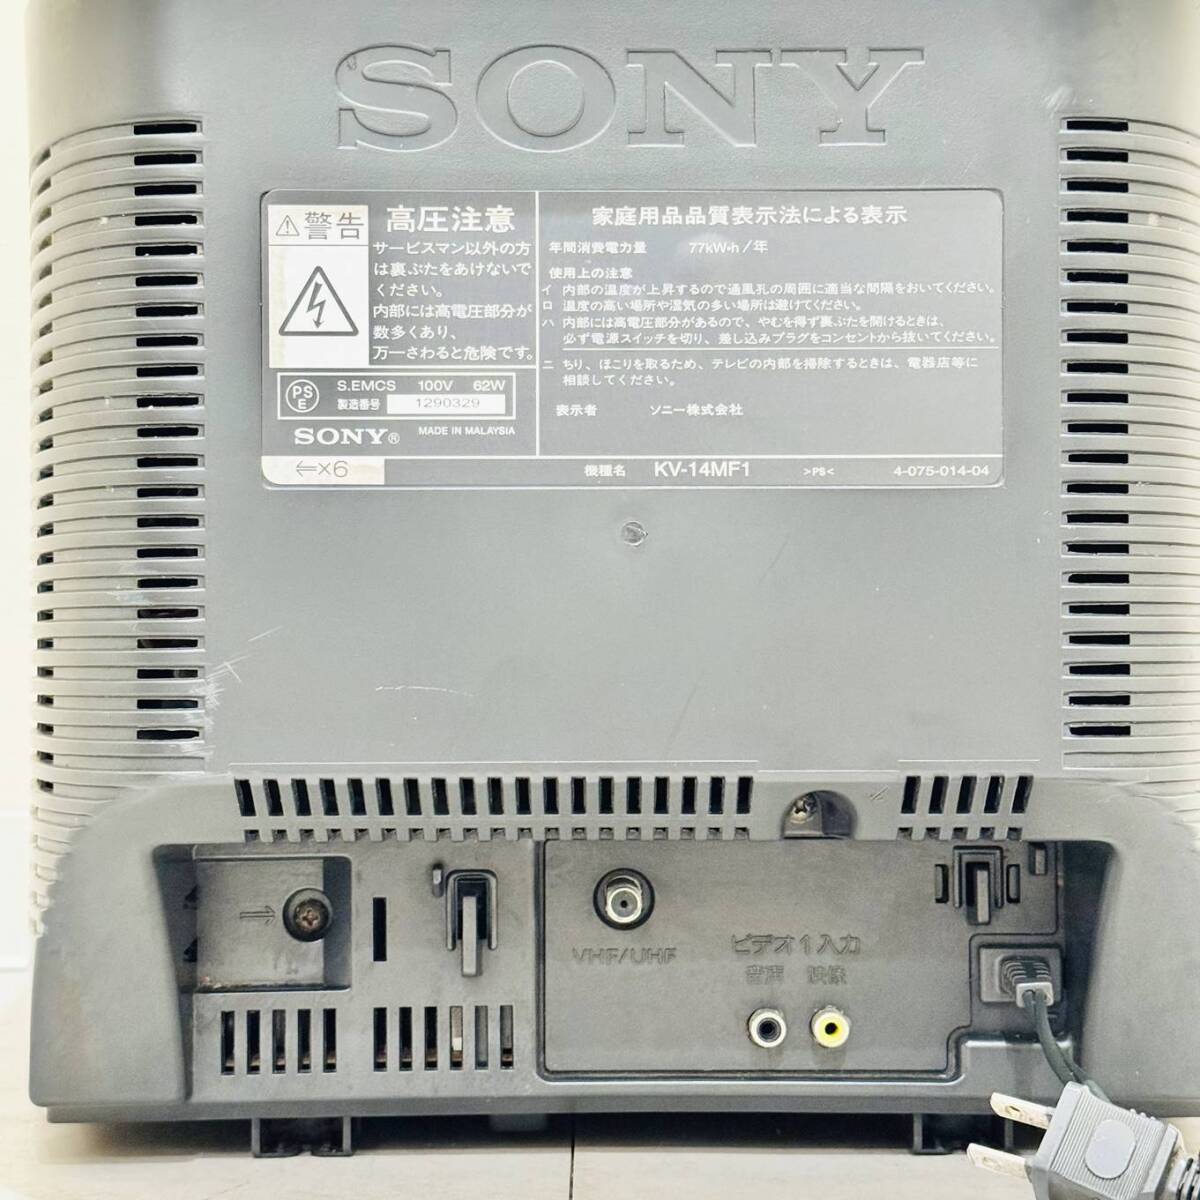 .HK9959 простой чистка settled электризация OK работоспособность не проверялась текущее состояние товар so NEAT linito long SONY Trinitron flat поверхность электронно-лучевая трубка телевизор KV-14MF1